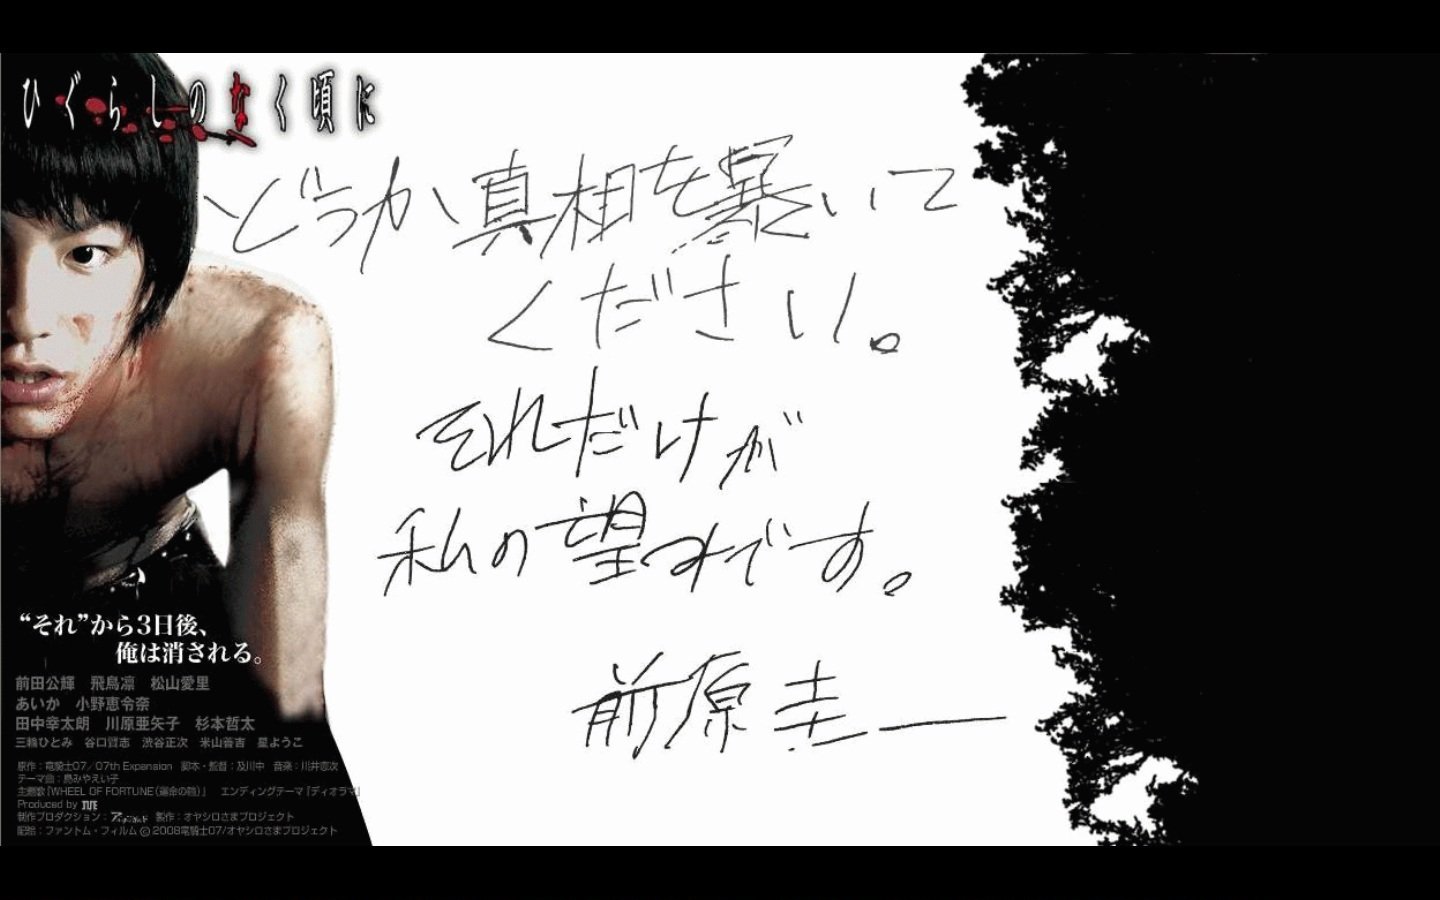 Higurashi no naku koro ni (2006) - Titlovi.com